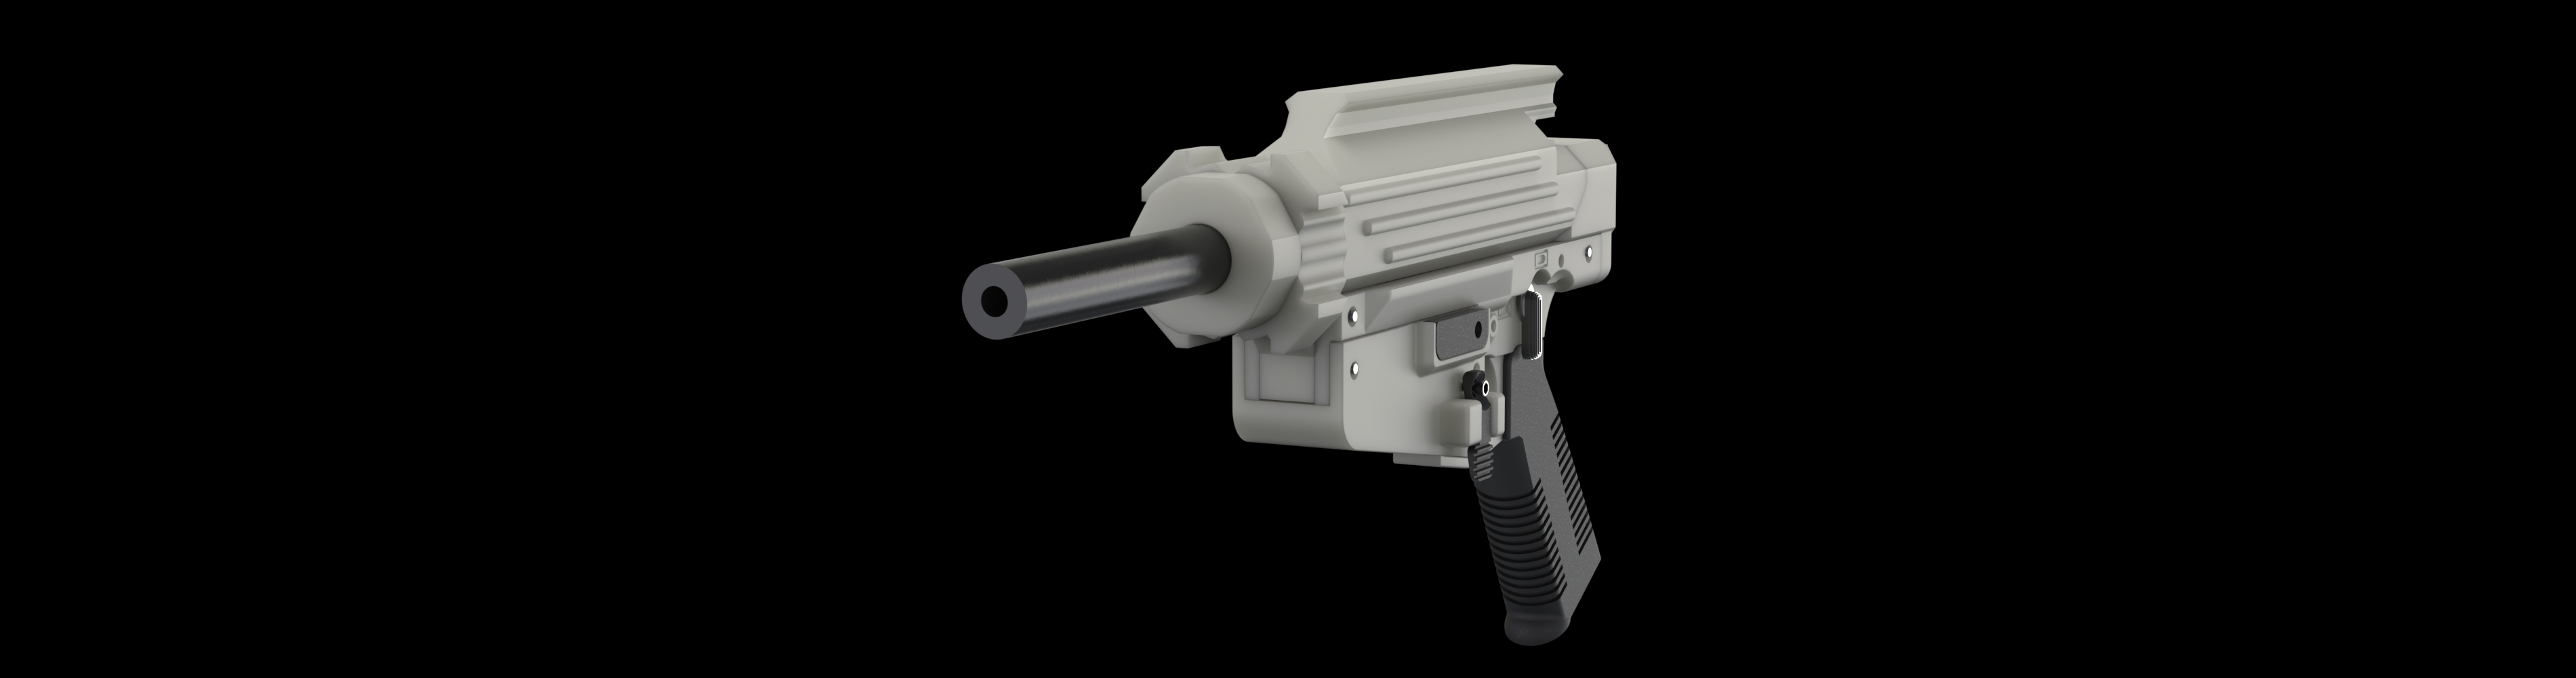 MX-22 .22 Caliber Pistol | DEFCAD